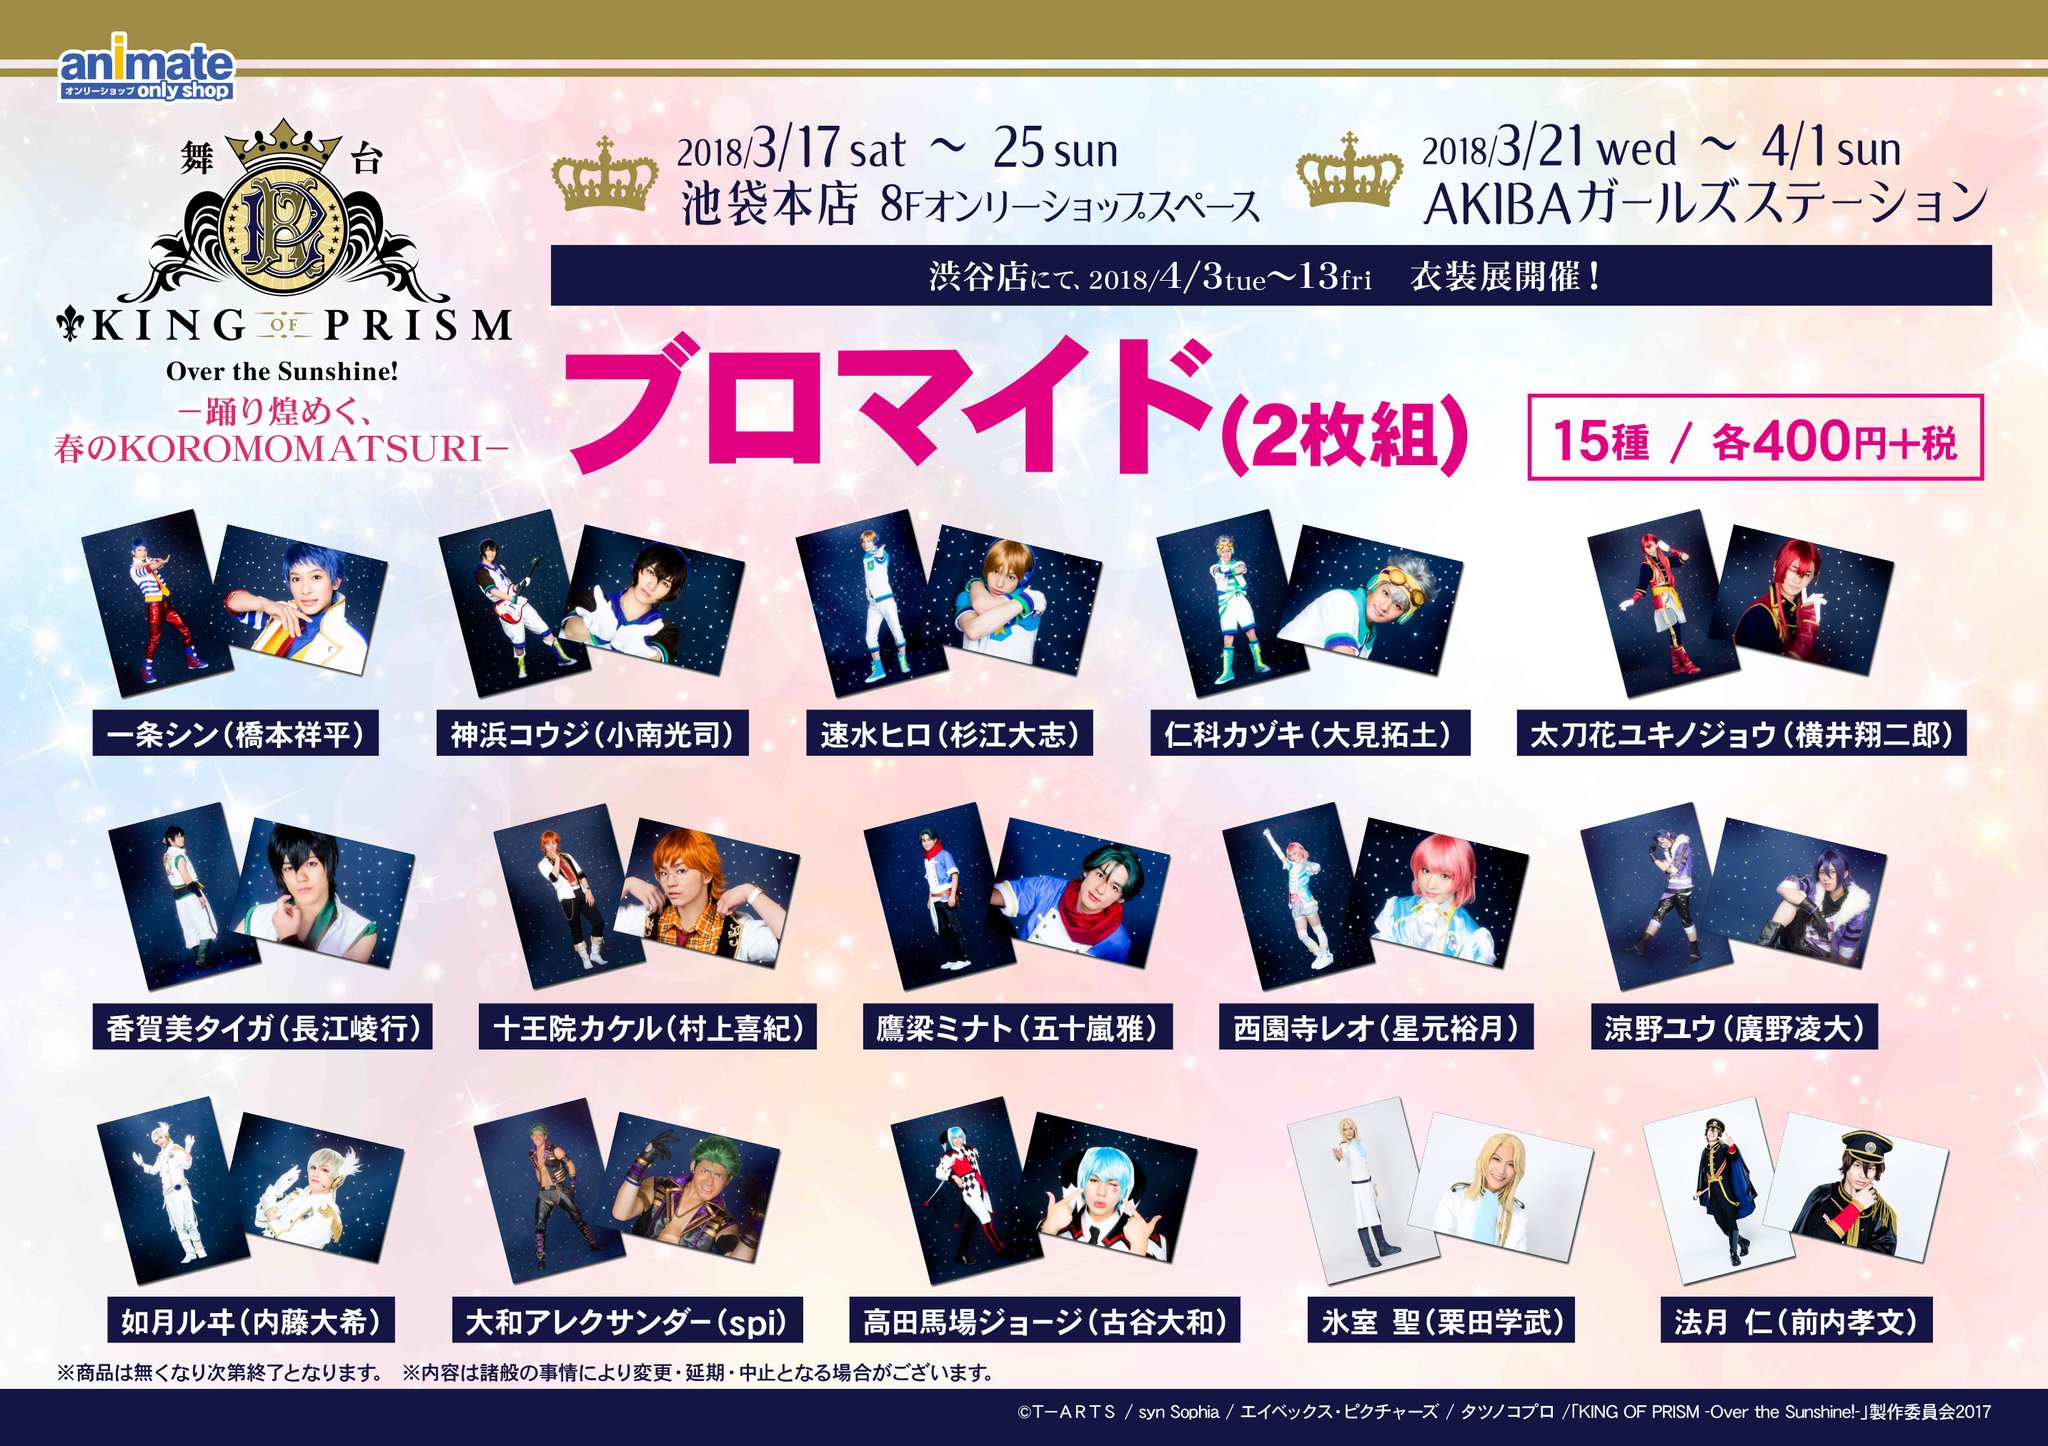 舞台KING OF PRISM x アニメイト渋谷「キンプリ衣装展」4/13まで開催!!